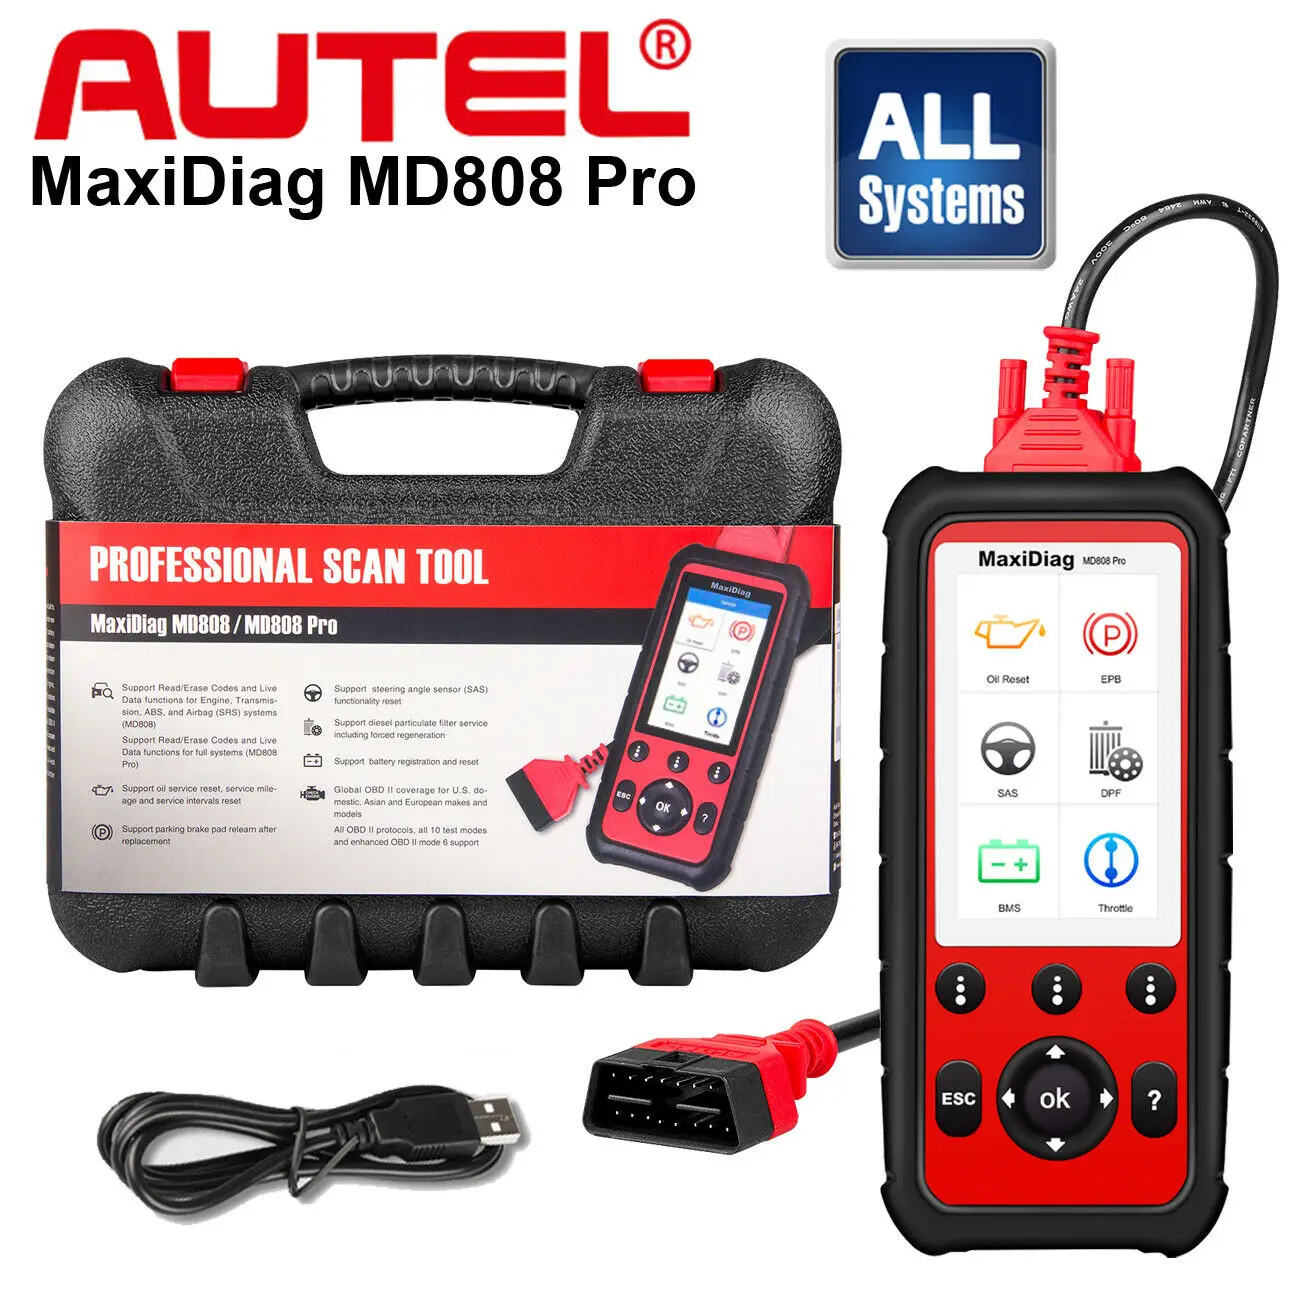 Autel MaxiDiag MD808 Pro Tất Cả Hệ Thống OBD2 Máy Quét Cao Cấp MaxiCheck Pro Và MD802 SAS,SRS,ABS EPB,DPF,BMS Miễn Phí Trọn Đời Cập Nhật